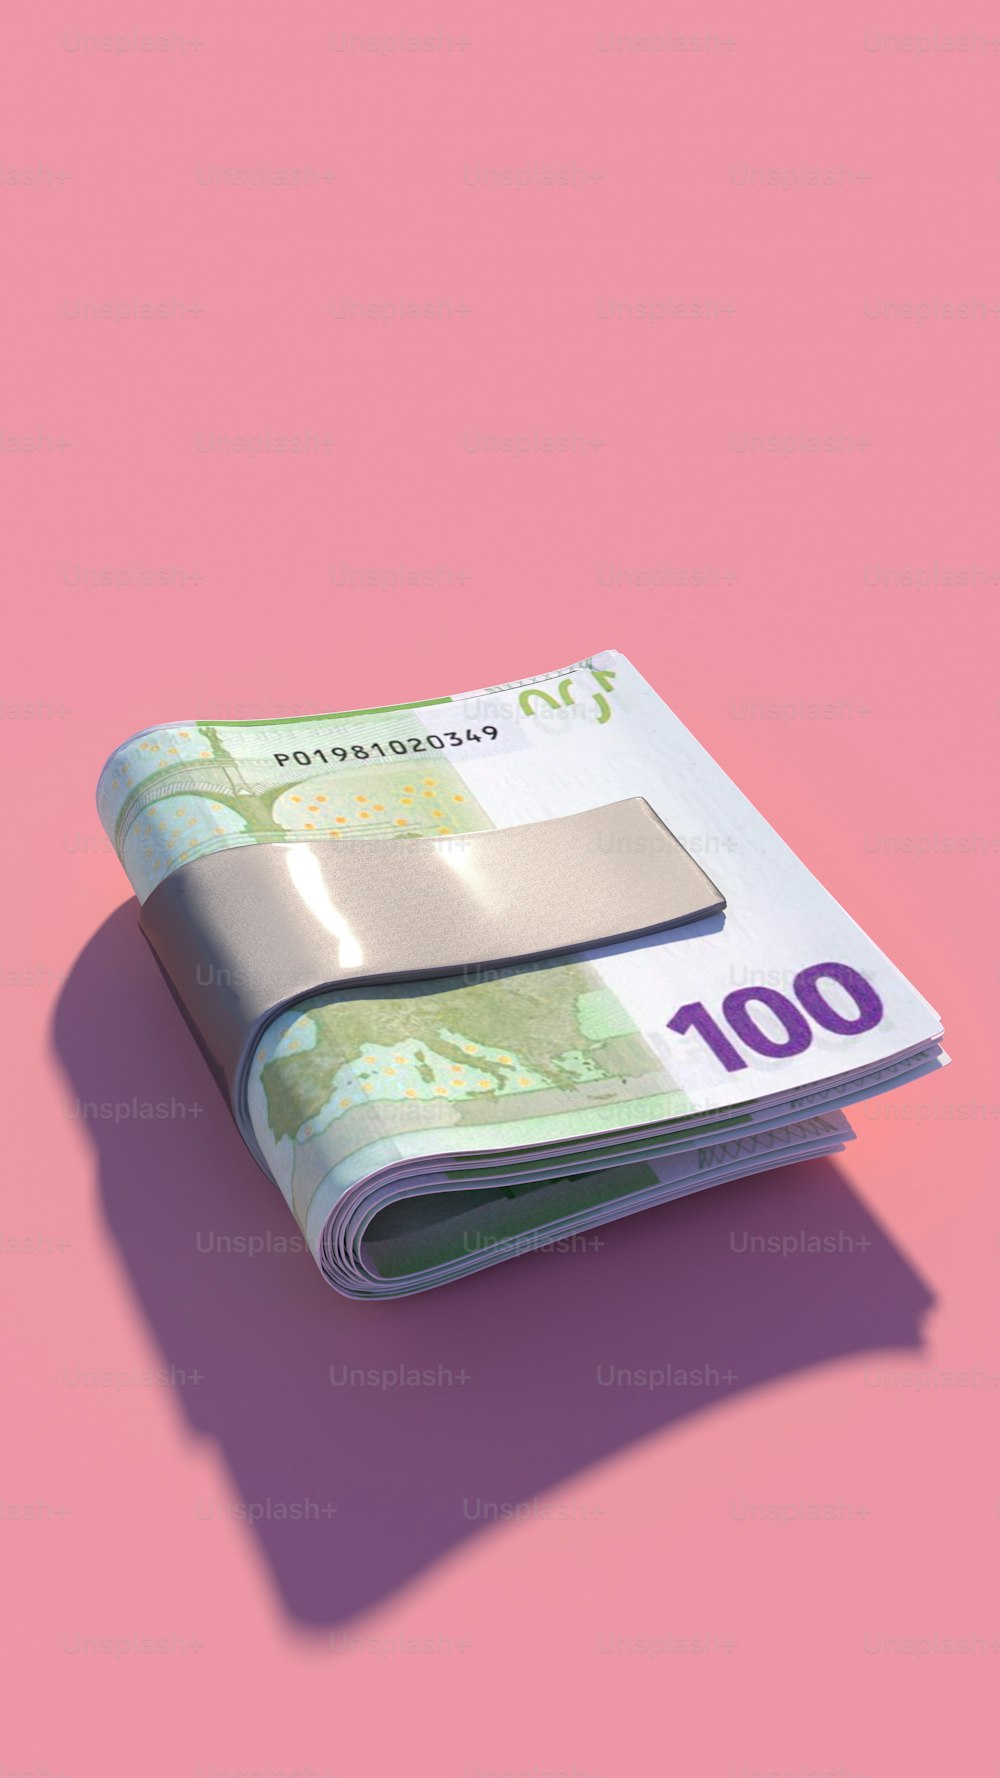 une pile d’argent posée sur une surface rose